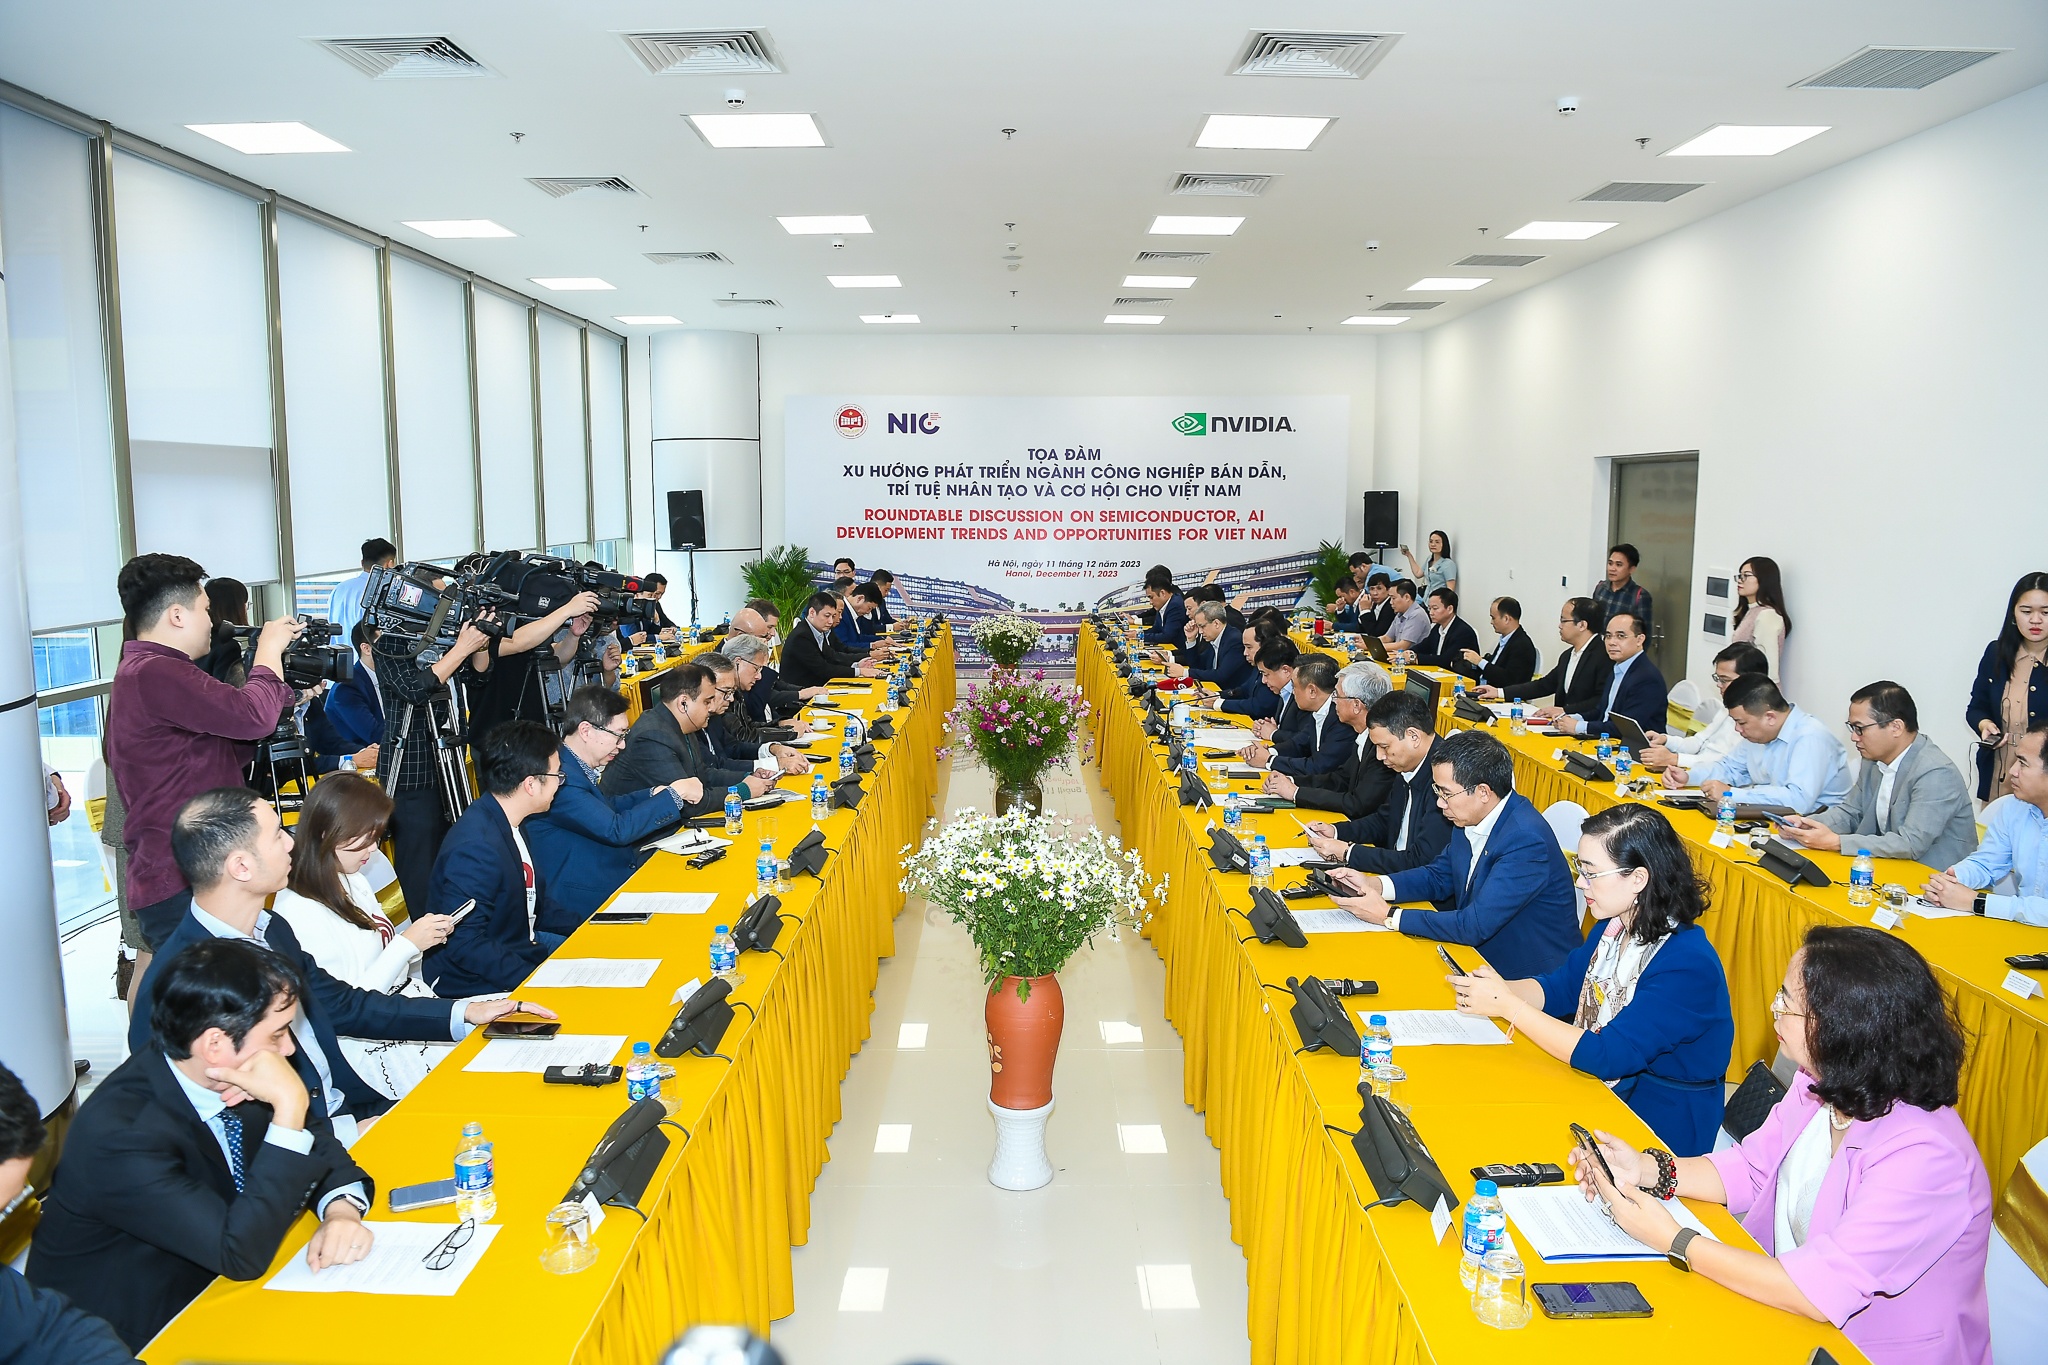 Xu hướng phát triển ngành công nghiệp bán dẫn, AI và cơ hội cho Việt Nam